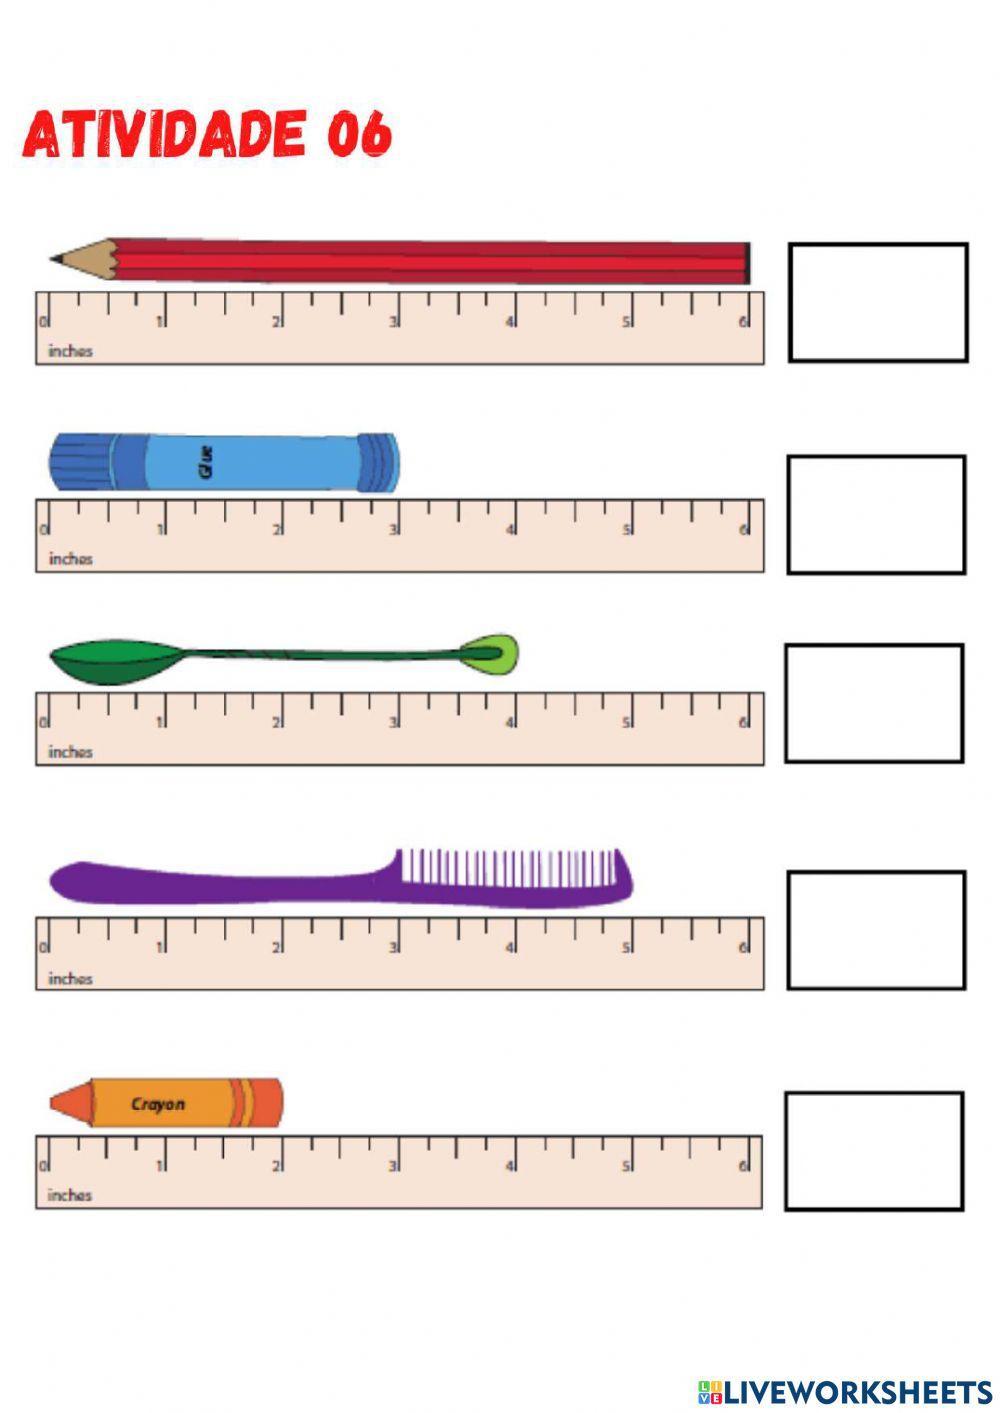 Medidas de comprimento